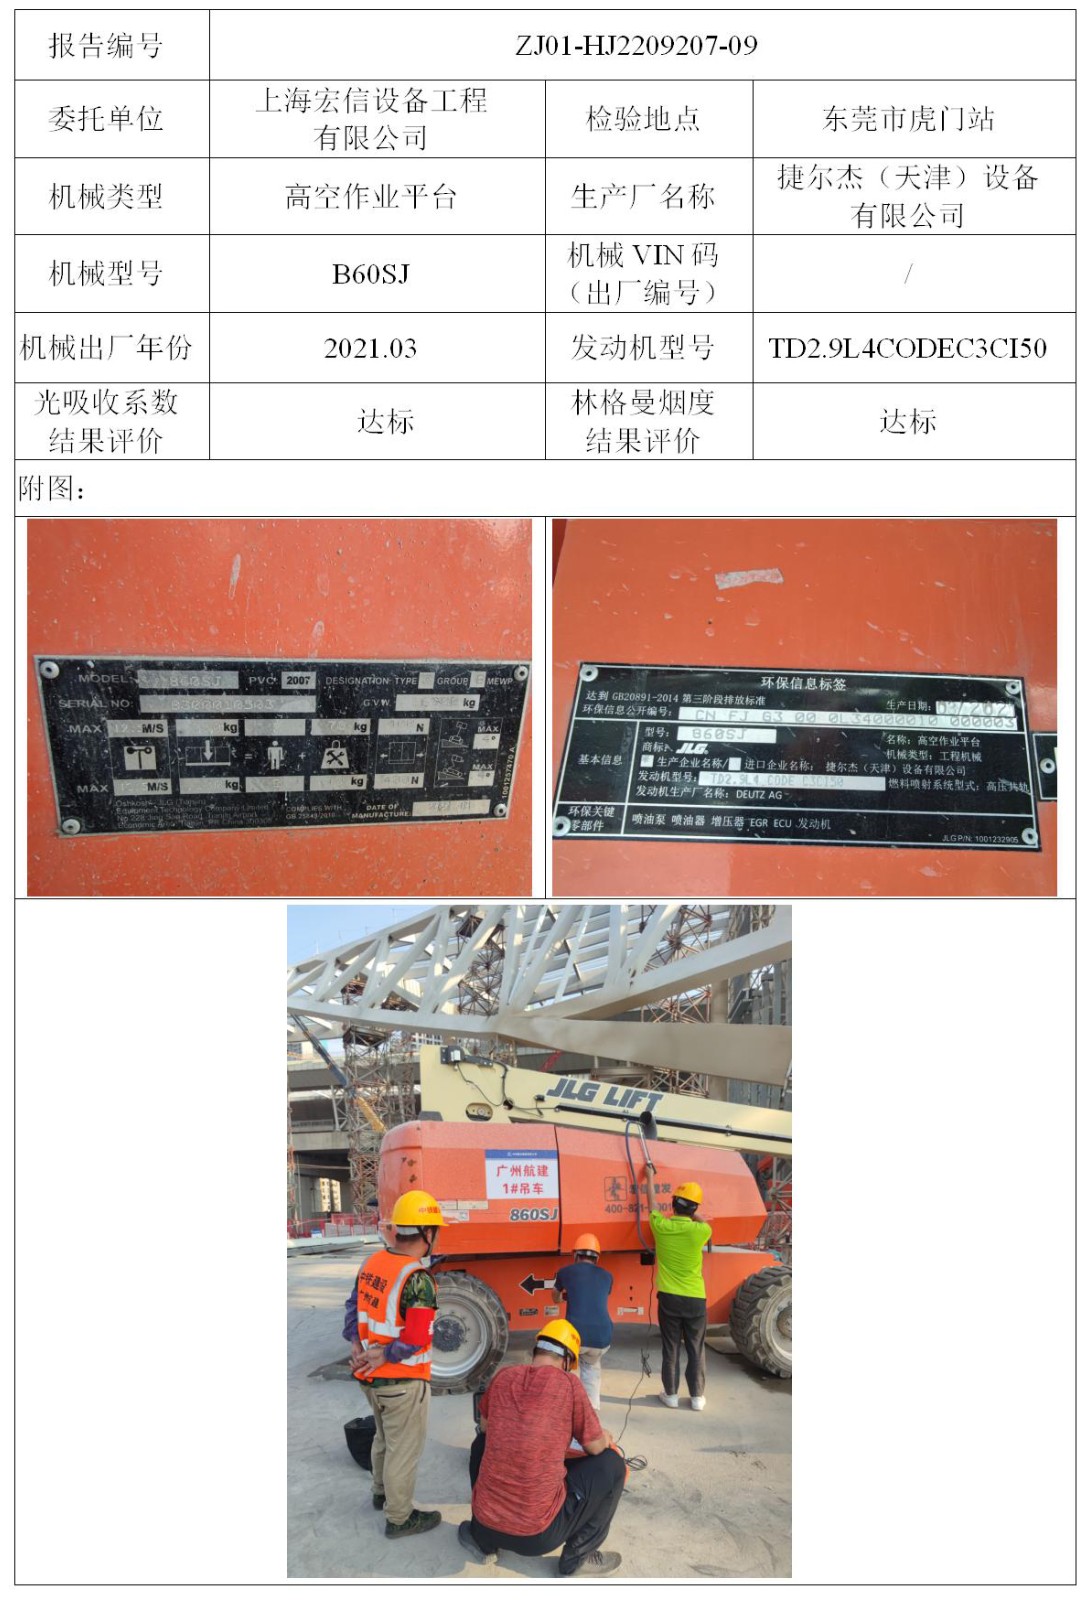 委托-ZJ01-HJ2209207-09上海宏信设备工程有限公司（叉车废气）二维码-张伟仪_01.jpg